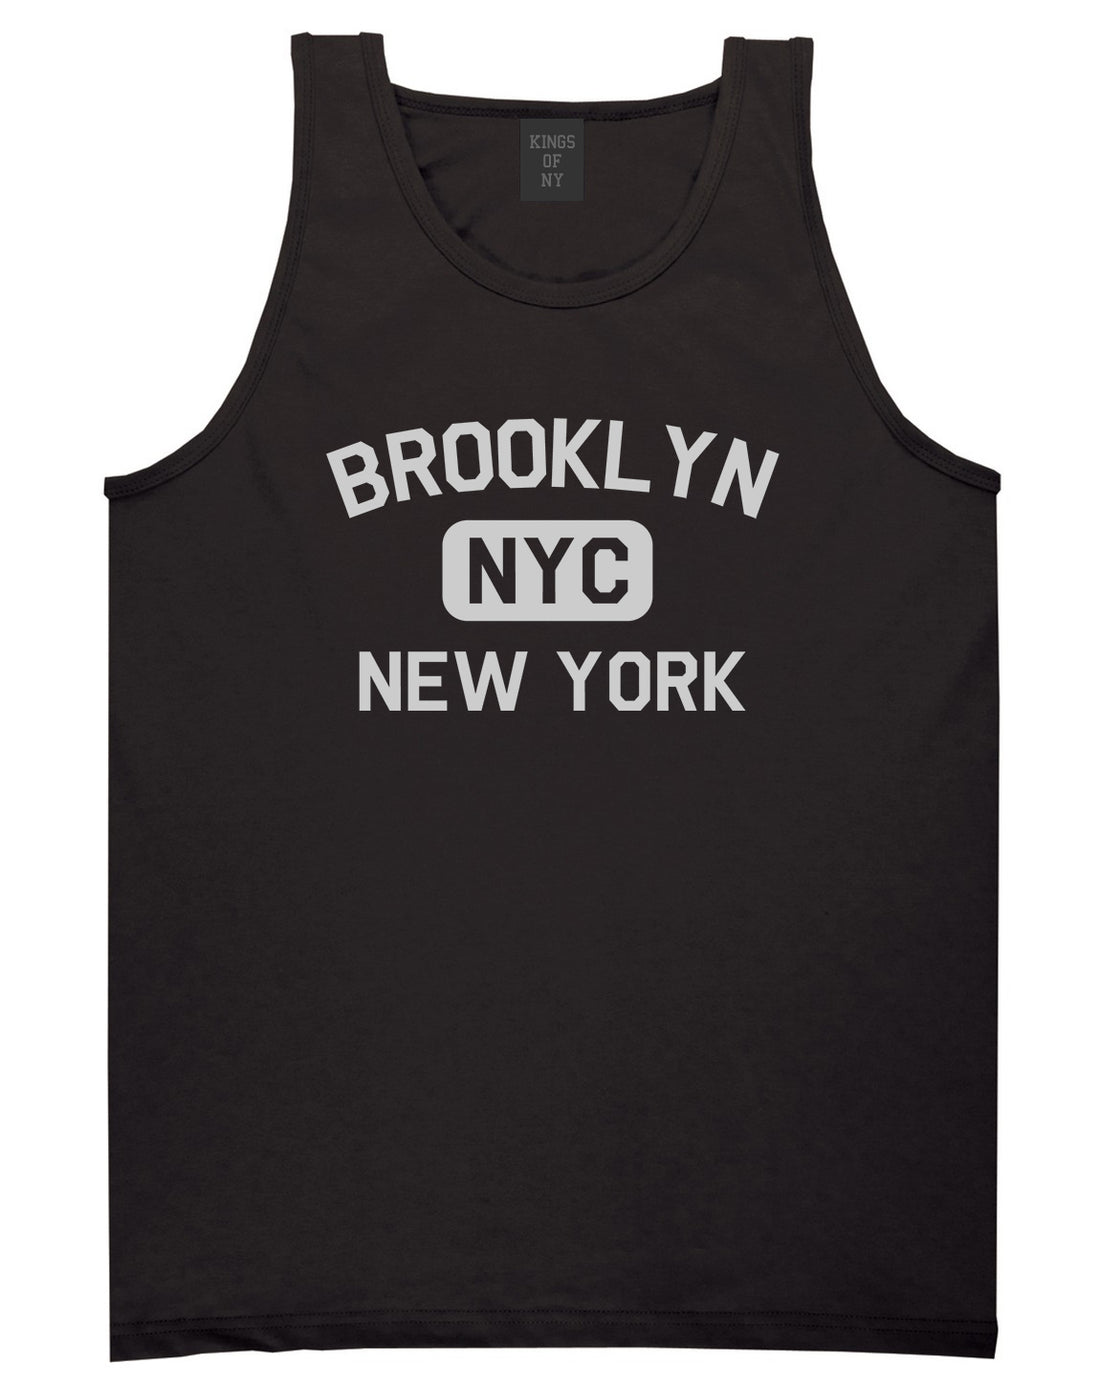 Brooklyn Gym NYC New York Mens Tank Top T-Shirt Black